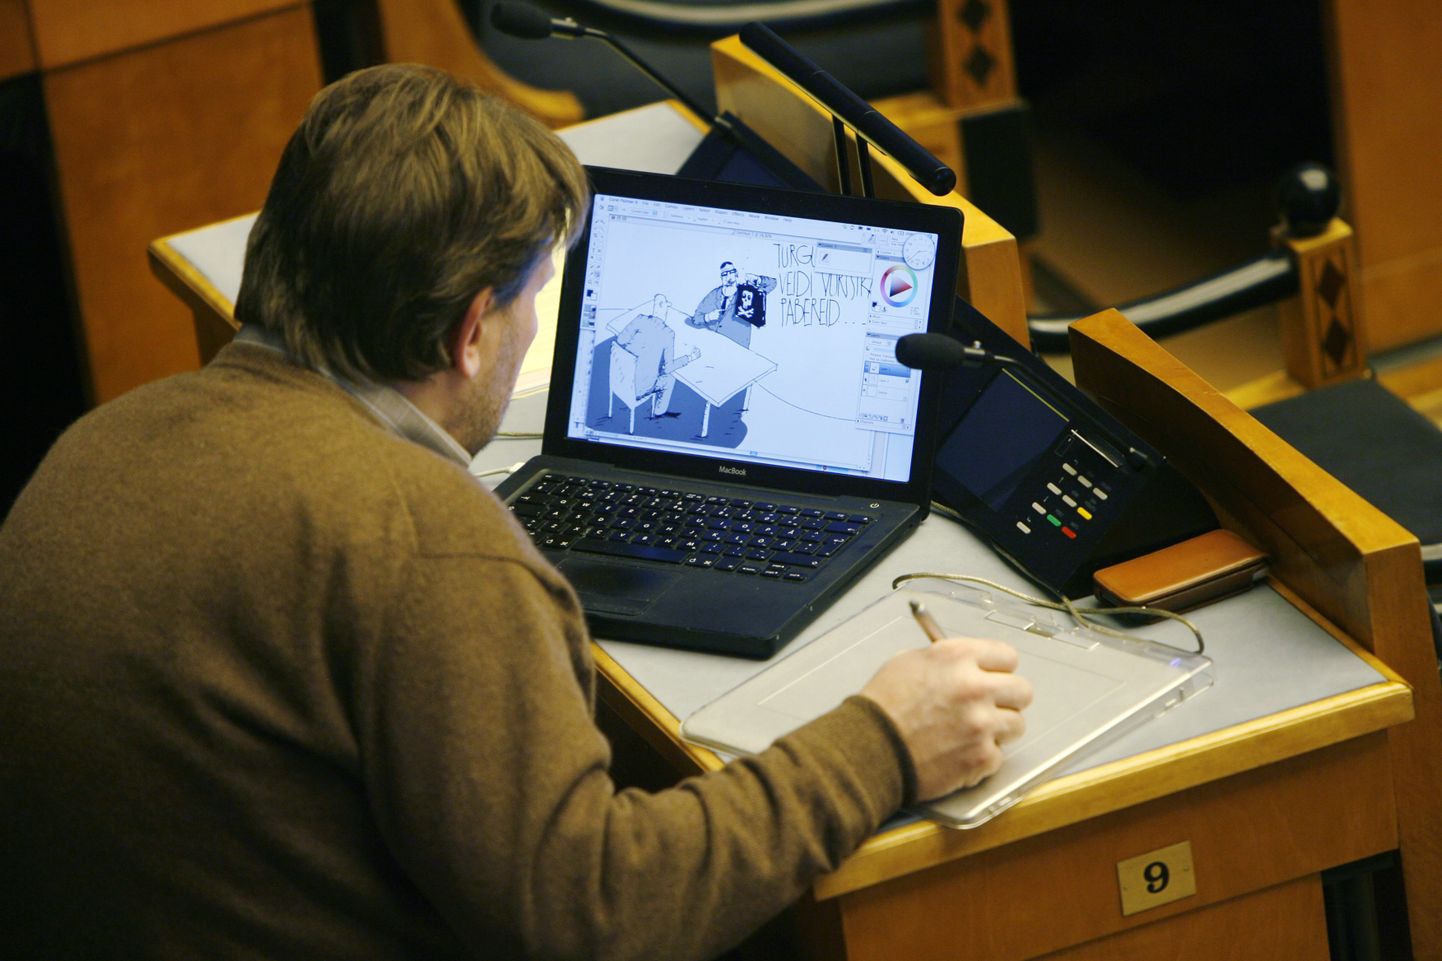 Marek Strandberg istungi ajal karrikatuuri joonistamas.